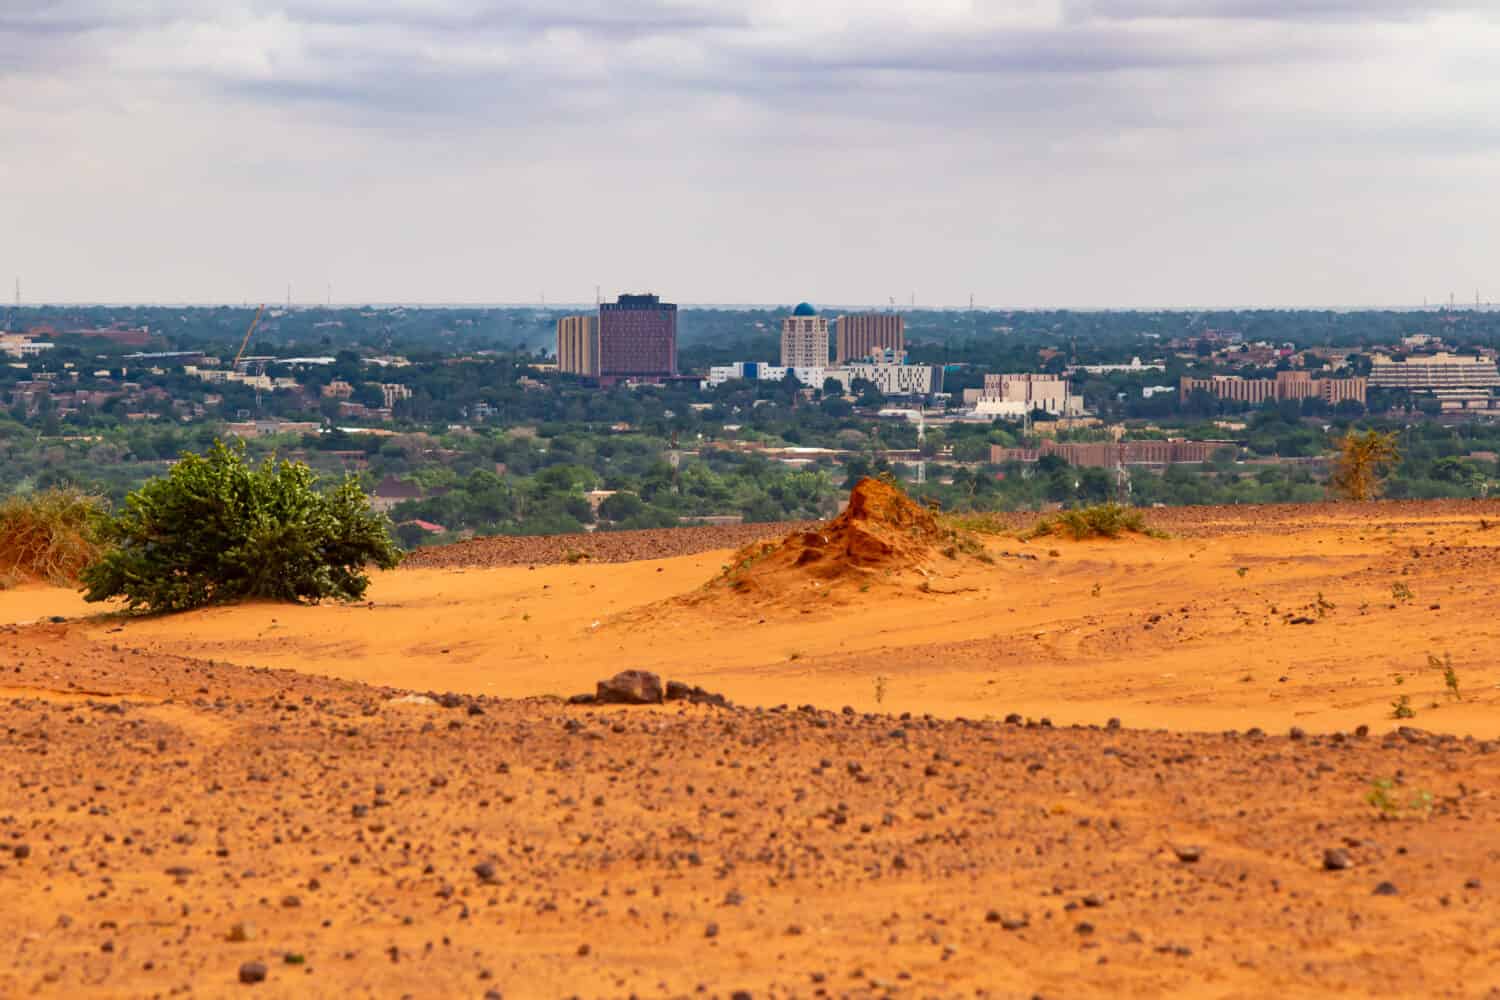 Skyline di Niamey, capitale del Niger, visto da un altopiano secco del Sahel più alto con un cespuglio verde e un termitaio in primo piano parzialmente distrutto dalle piogge nella stagione umida estiva